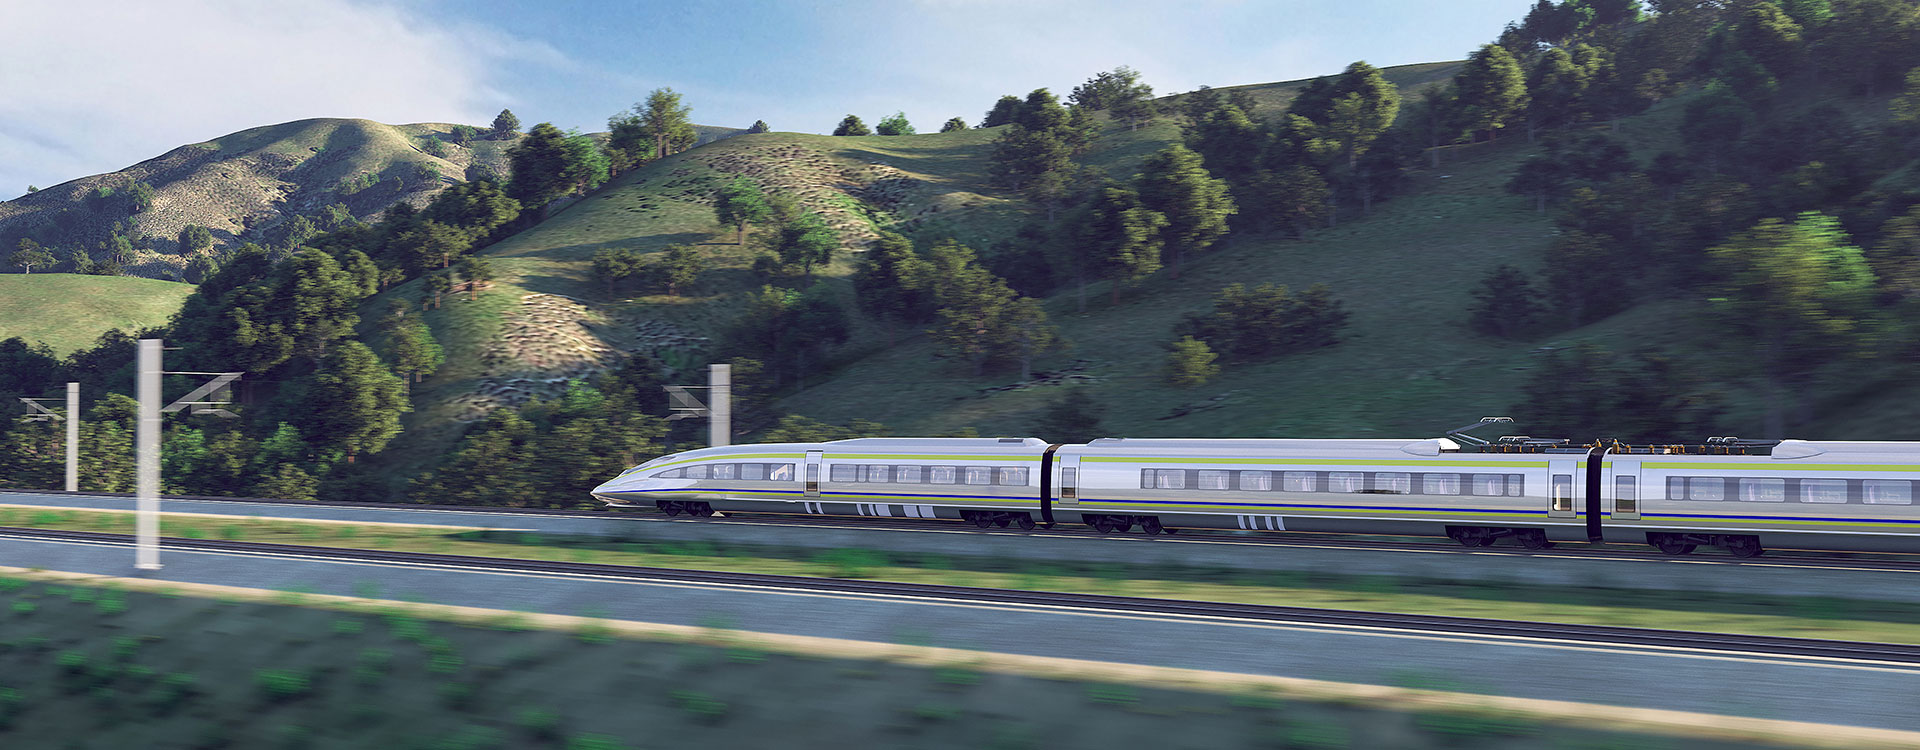 bnr-california high speed train